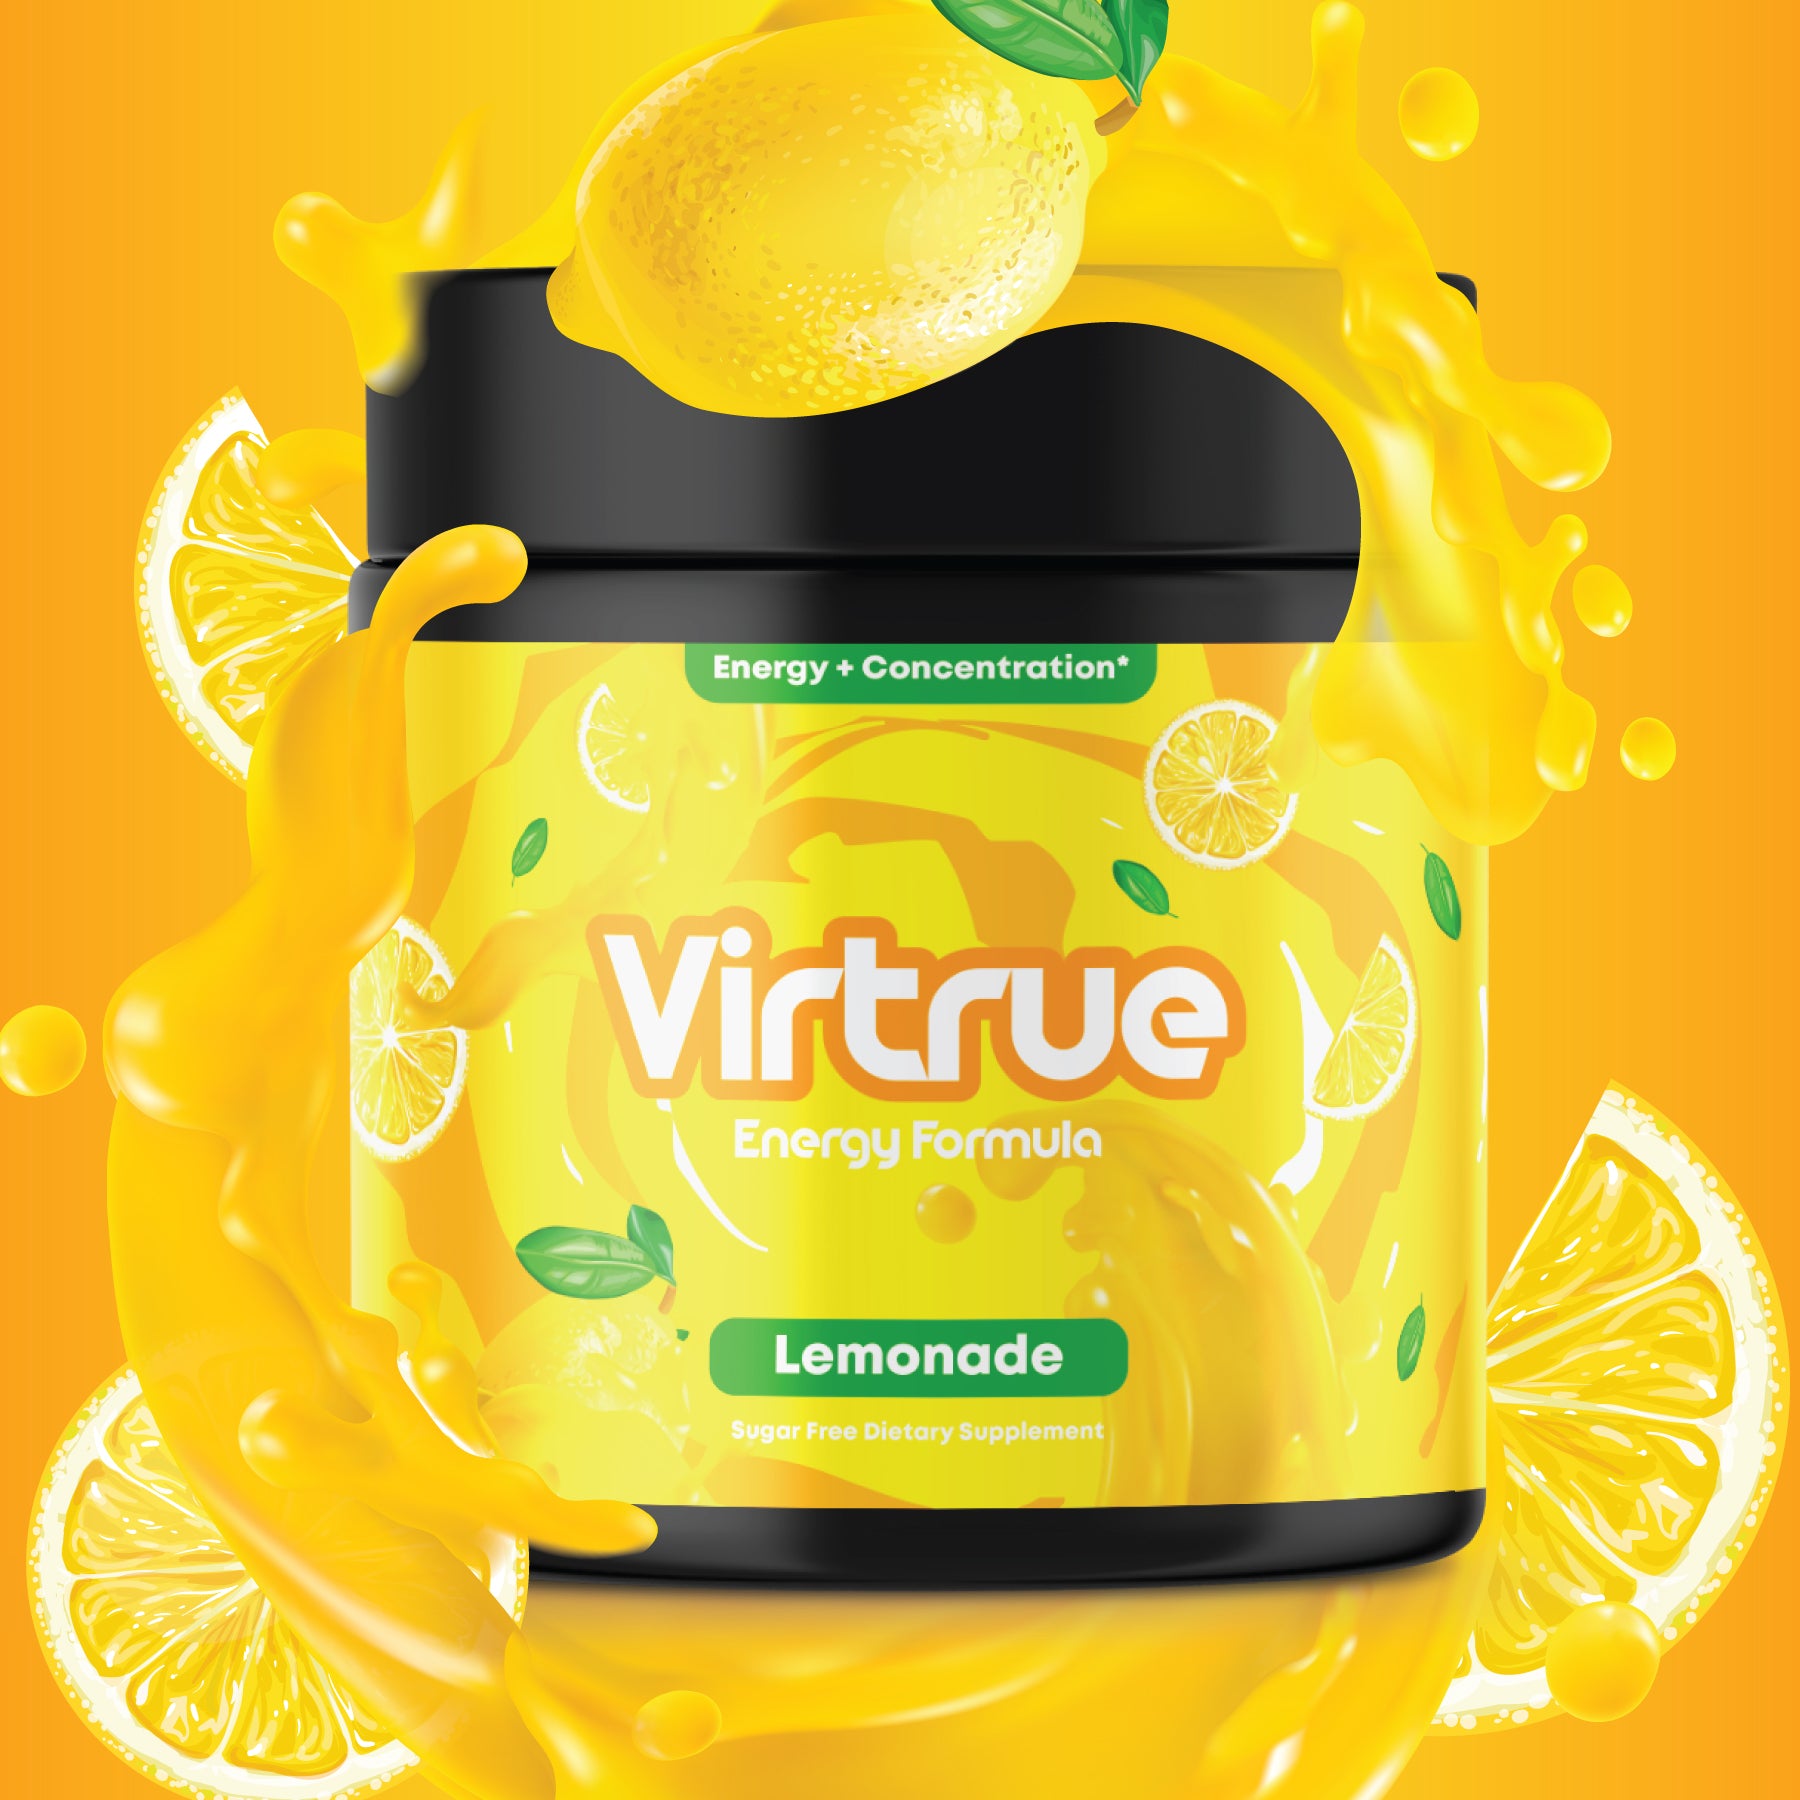 Lemonade Energy Formula